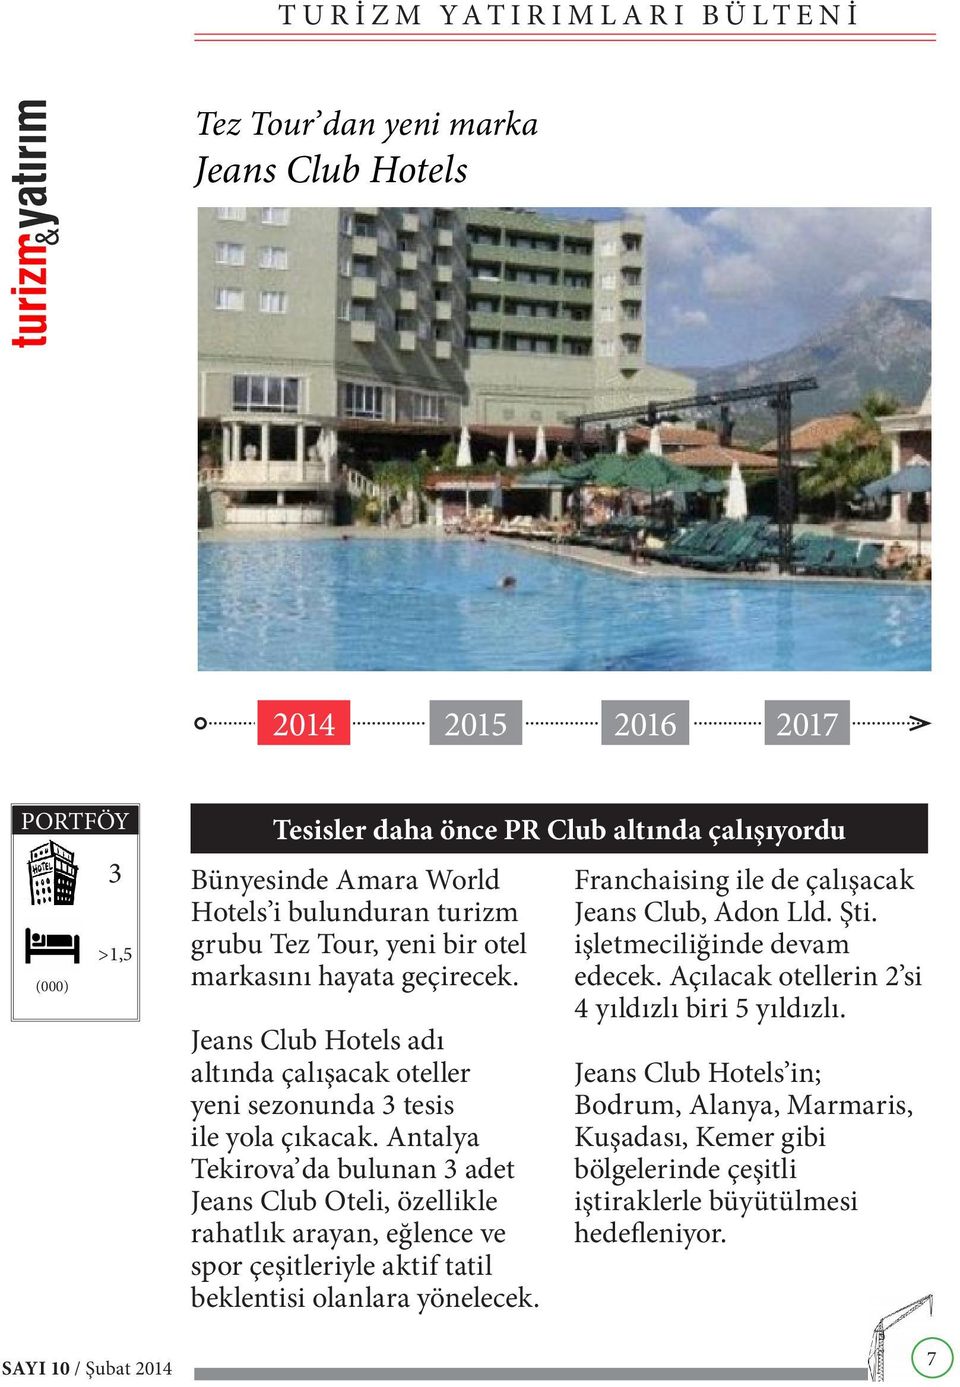 Antalya Tekirova da bulunan 3 adet Jeans Club Oteli, özellikle rahatlık arayan, eğlence ve spor çeşitleriyle aktif tatil beklentisi olanlara yönelecek.